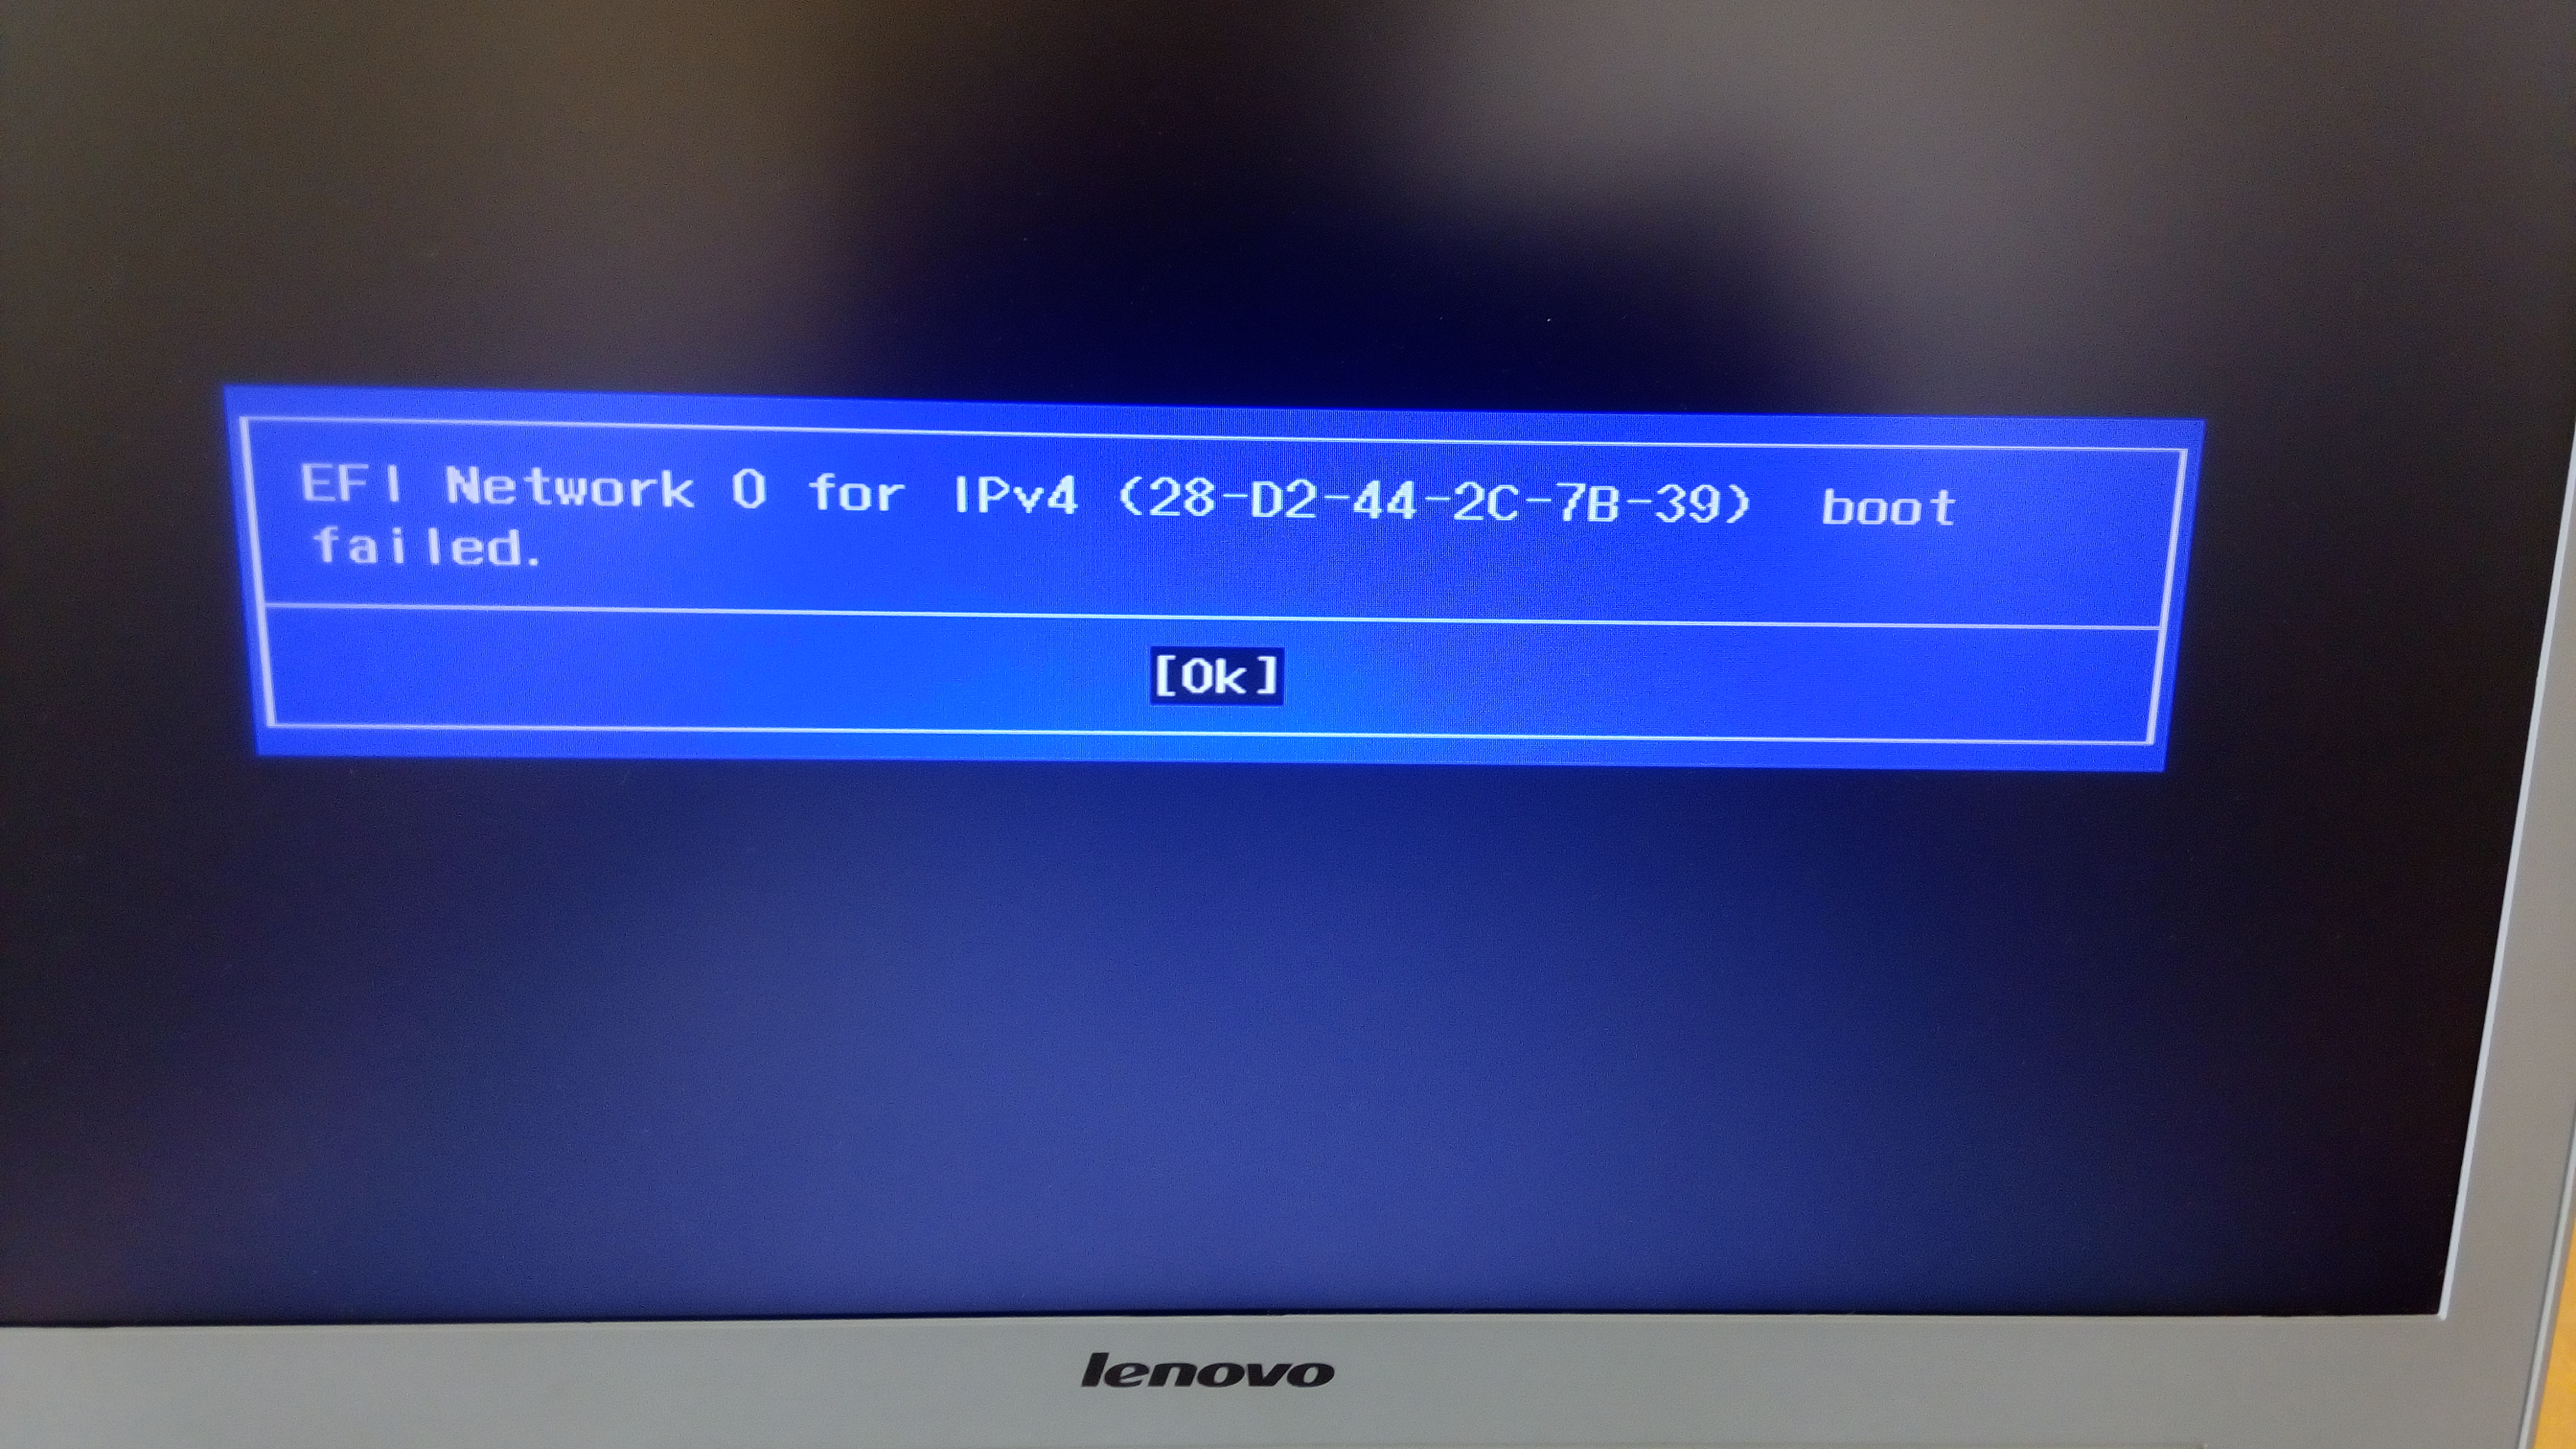 EFI PXE Network. EFI PXE Network Lenovo. Network Boot. EFI PXE Network (84-a9-38-c9-CF-e6). Pxe over ipv4